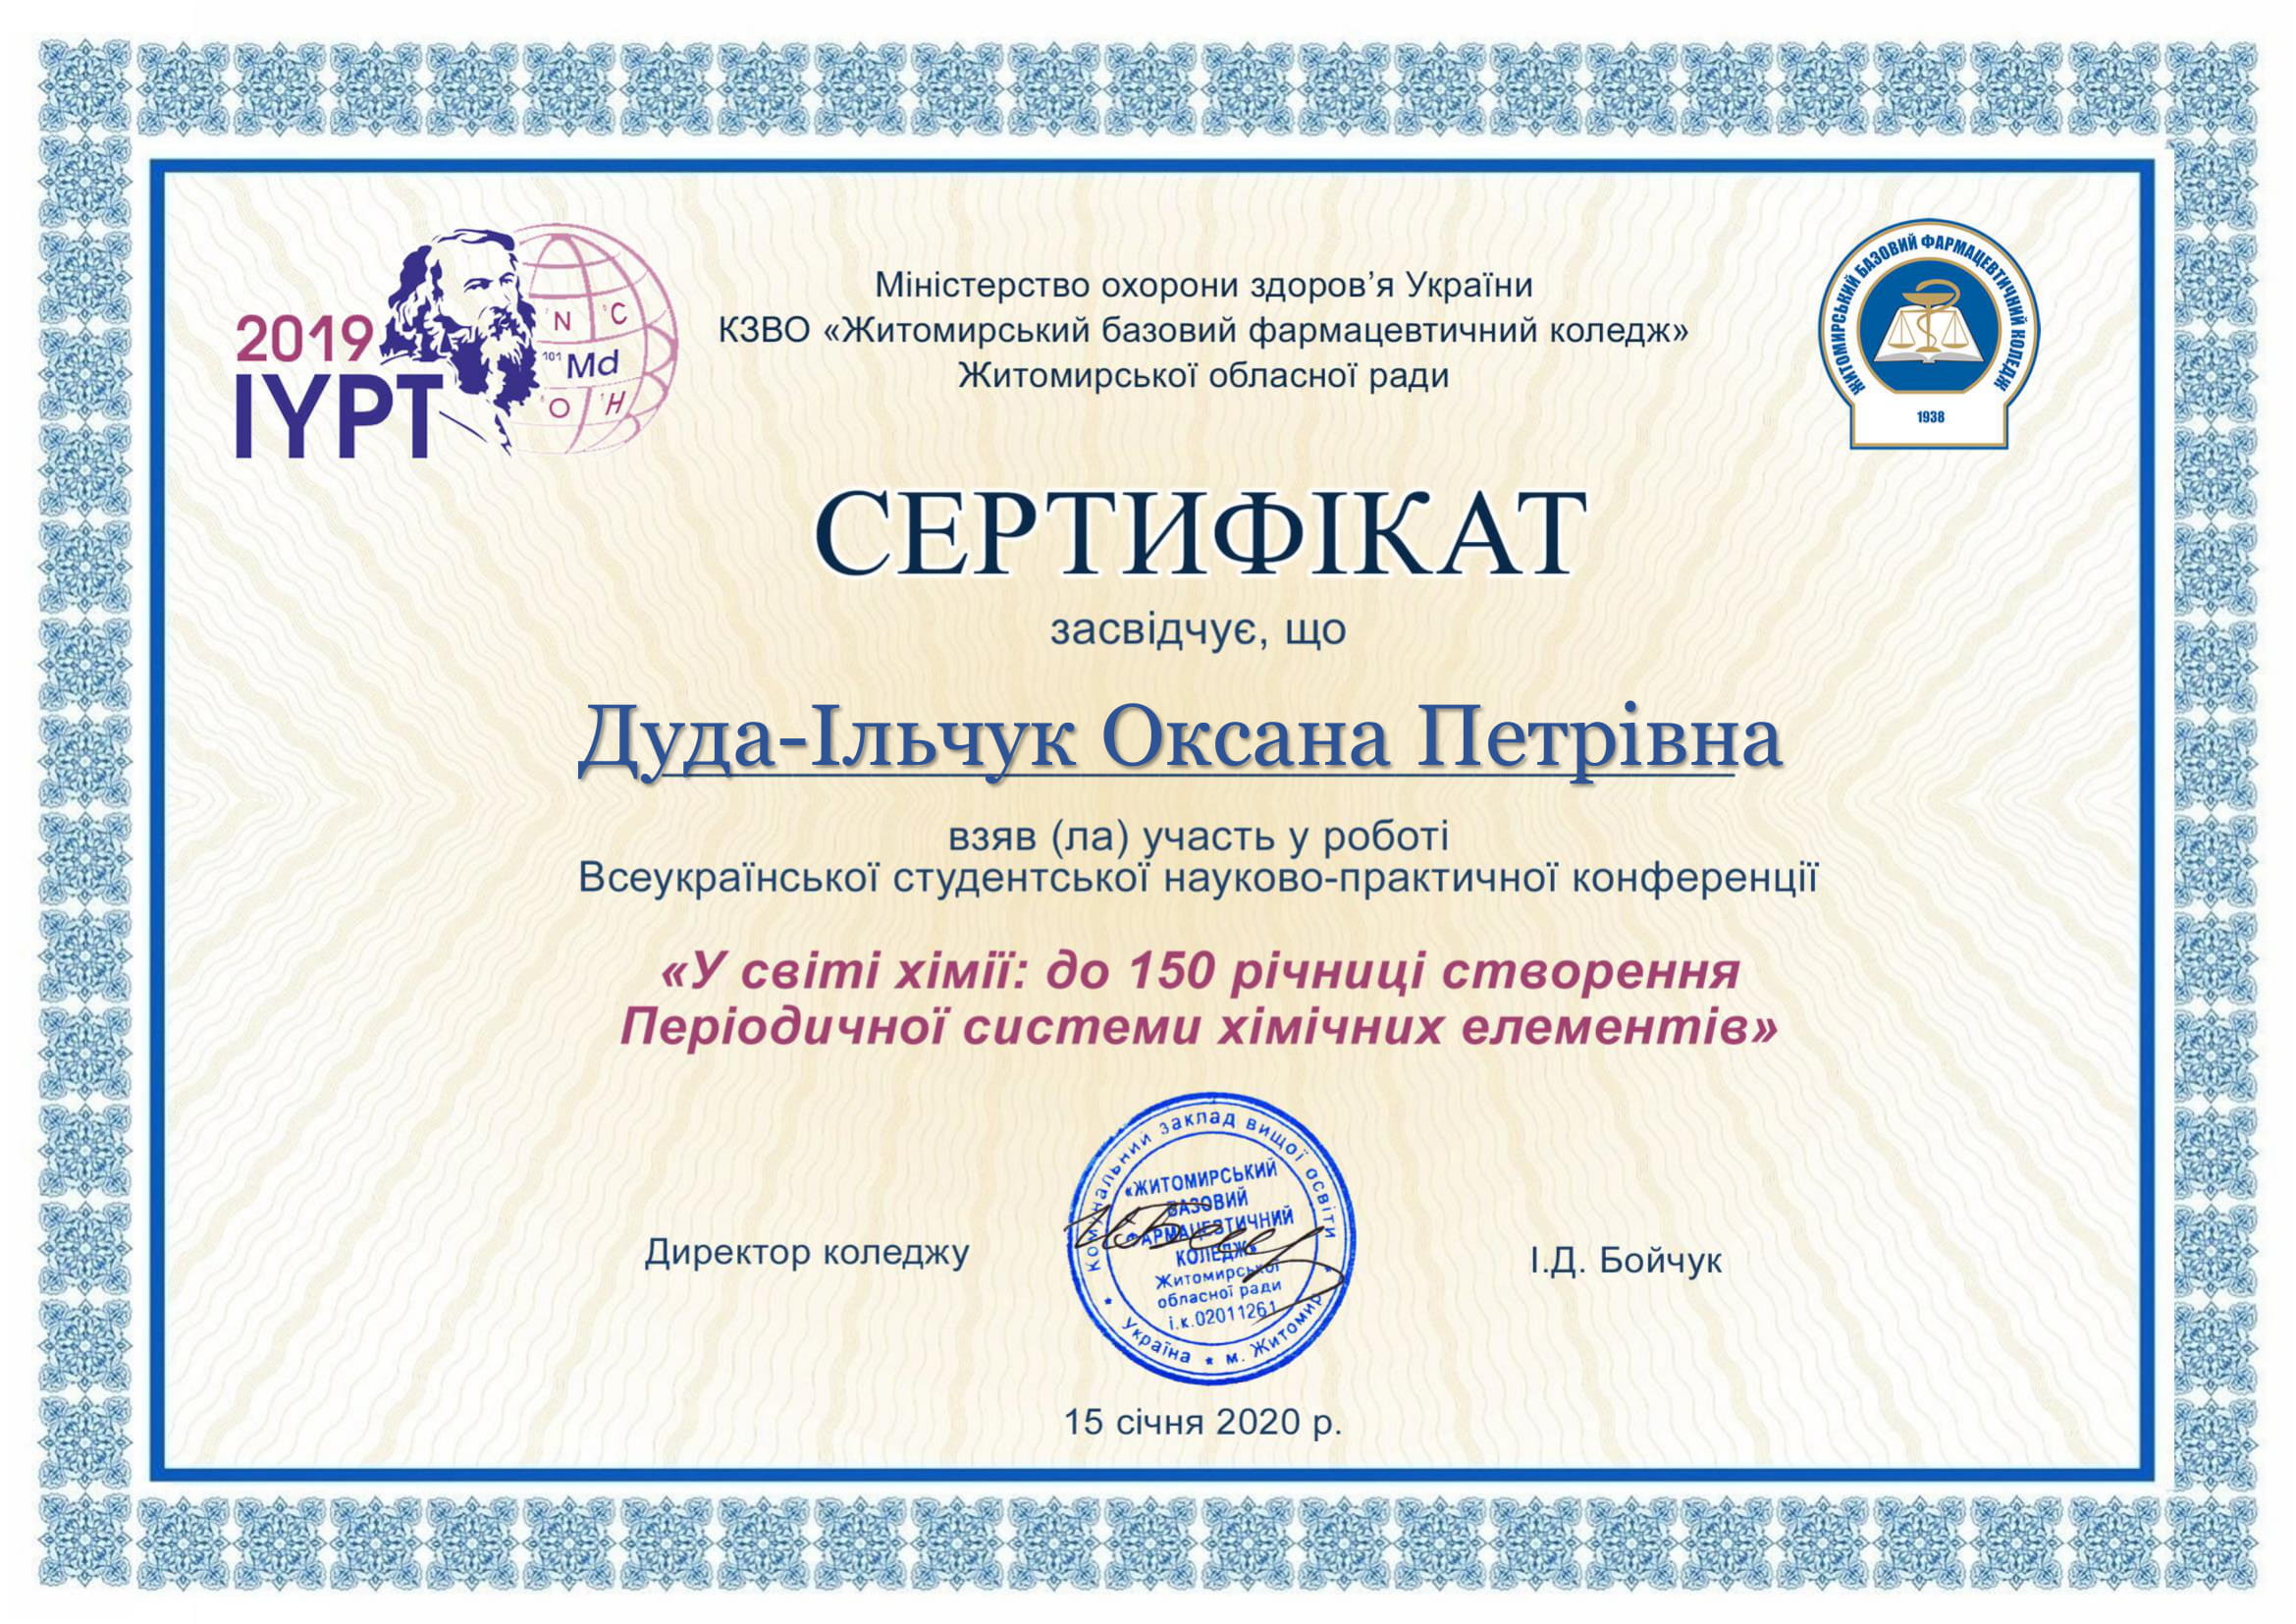 Всеукраїнська студентська науково-практична конференція "У світі хімії: до 150 річниці створення Періодичної системи хімічних елементів"